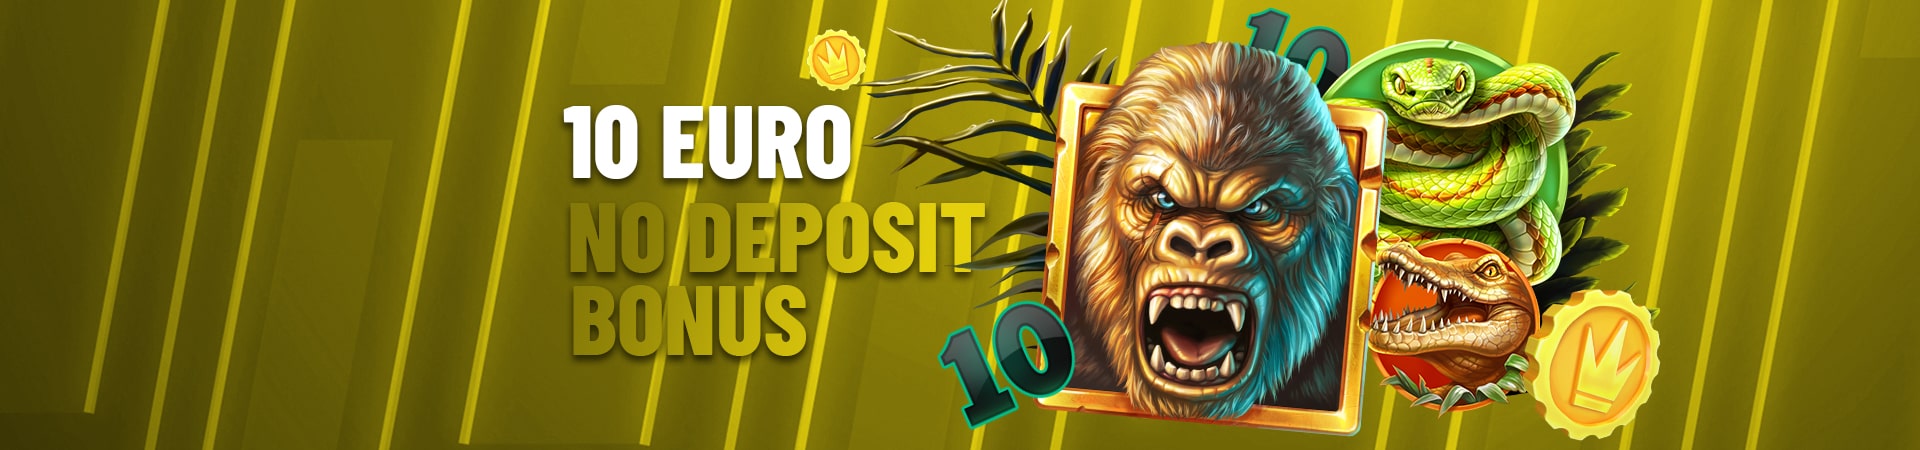 10 euro bonus casino